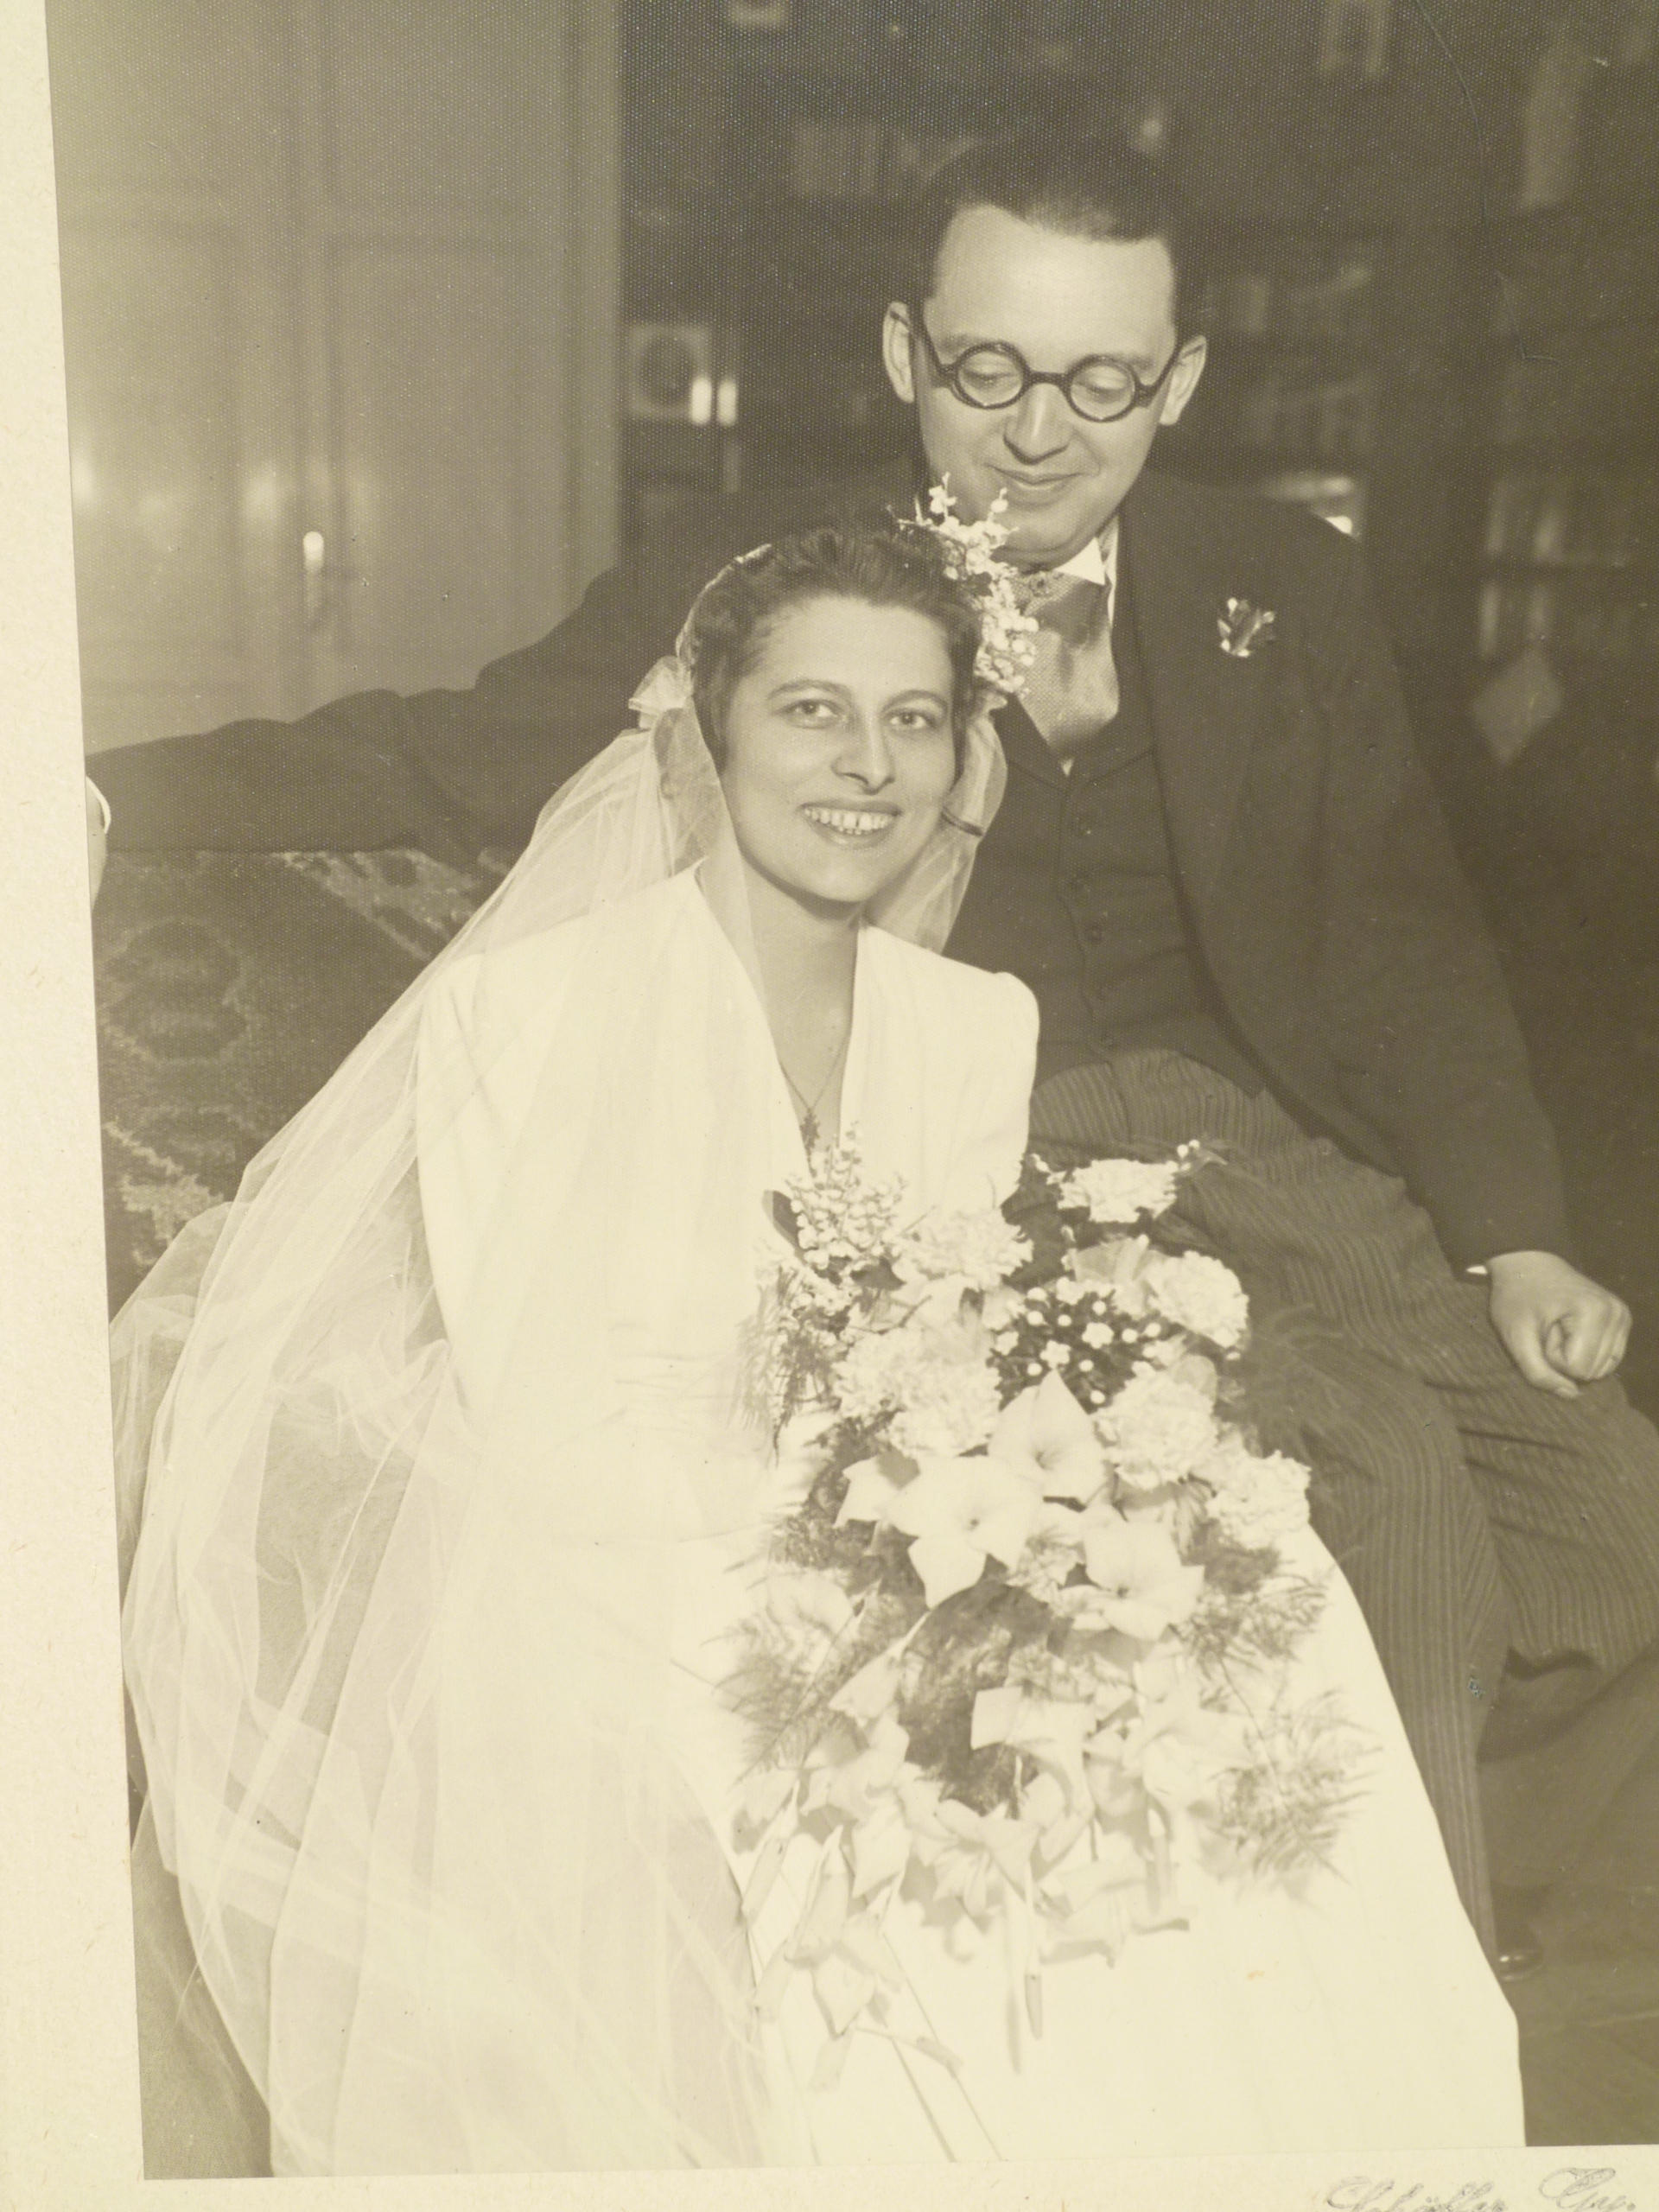 Wedding of István Bibó and Boriska Ravasz, Budapest 1940